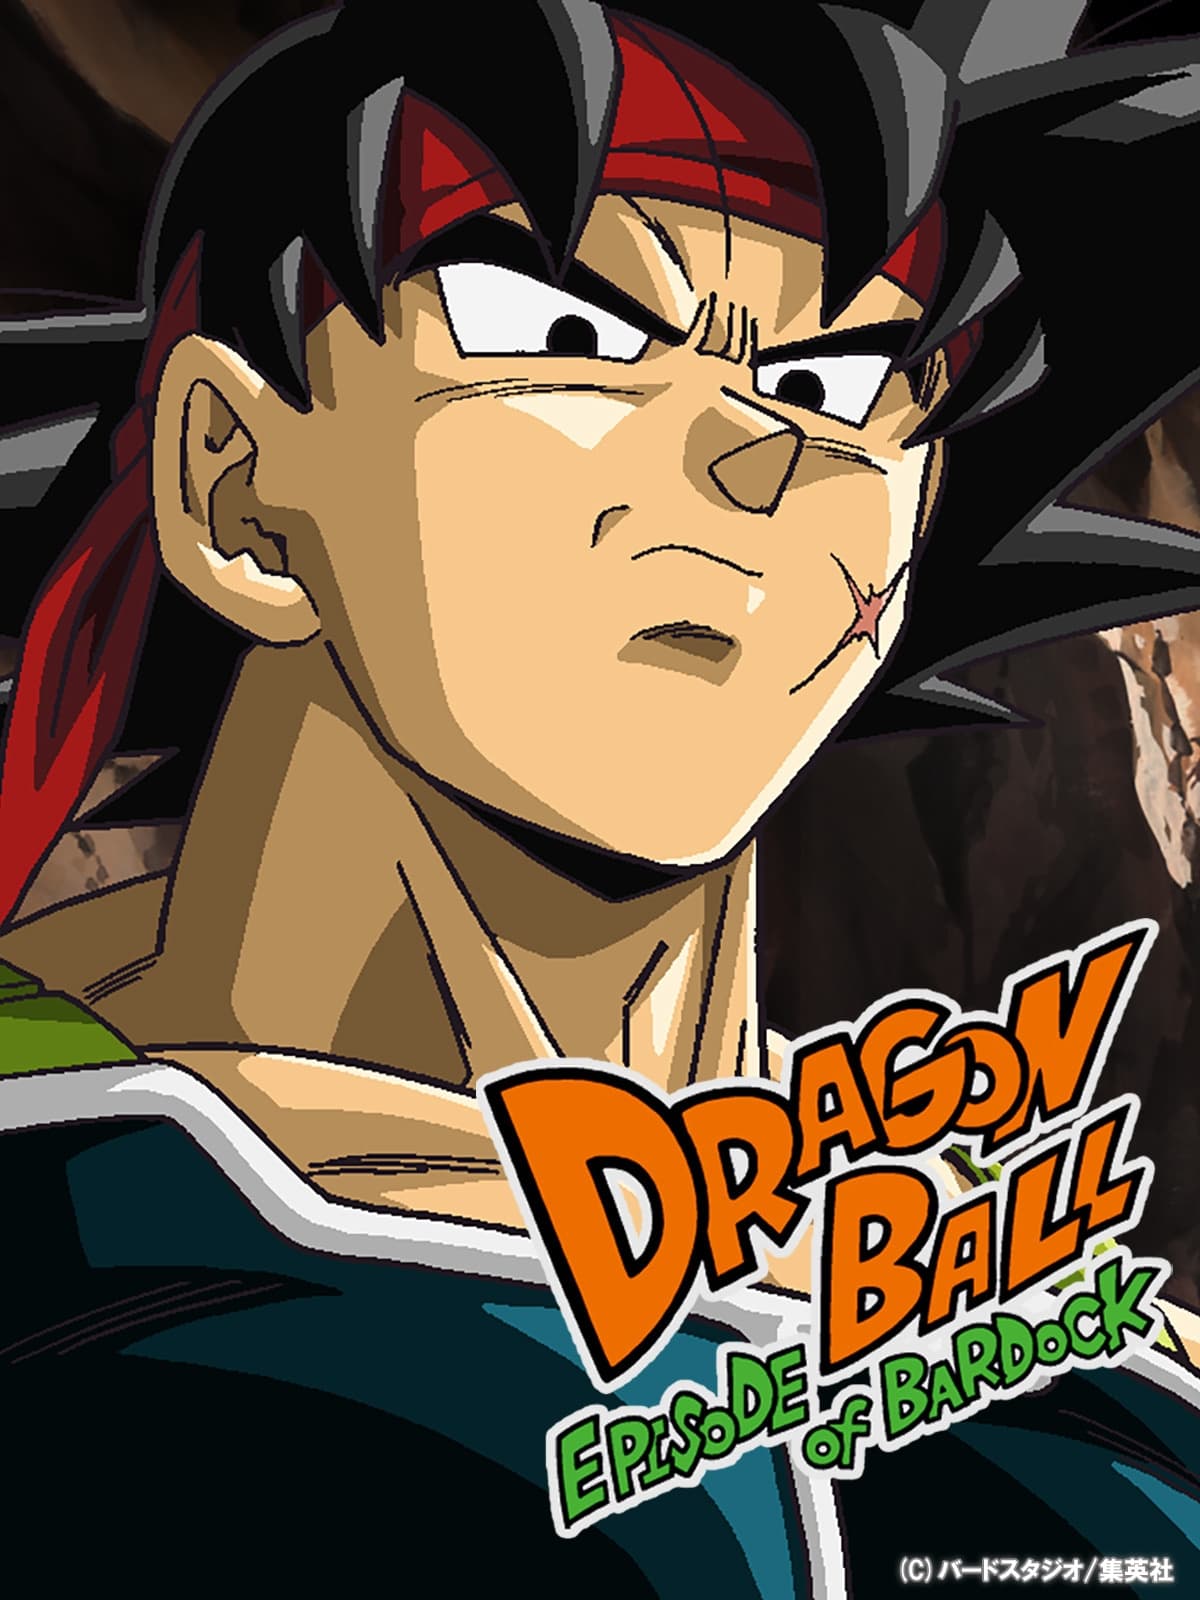 Dragon Ball Z - Episode of Bardock  Dragon ball, Dragon ball z, Episode of  bardock